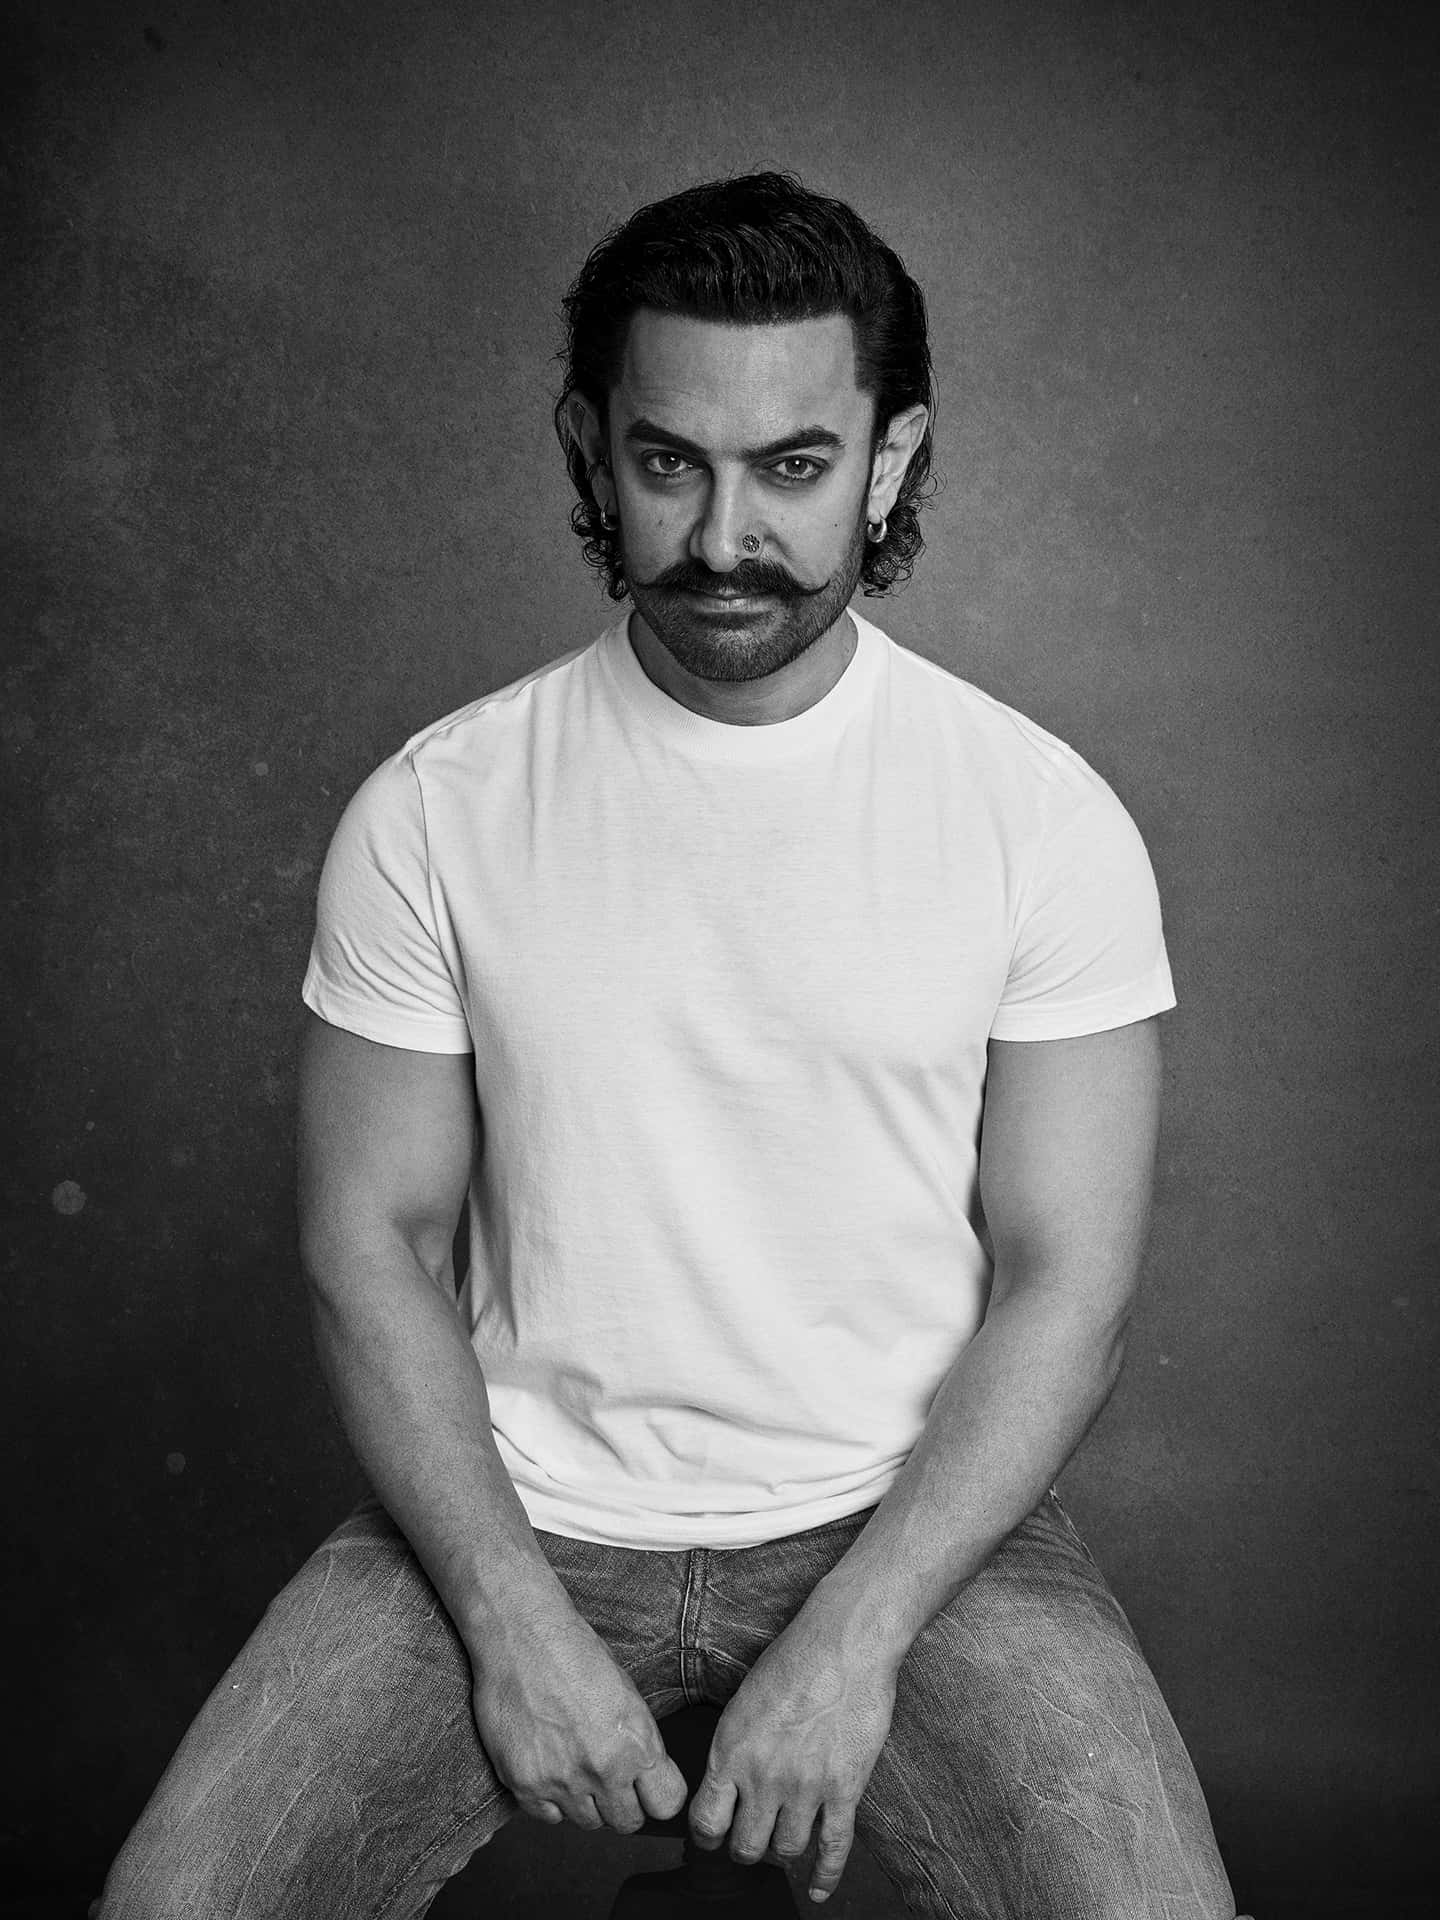 Aamirkhan, Indisk Skuespiller Og Producent.